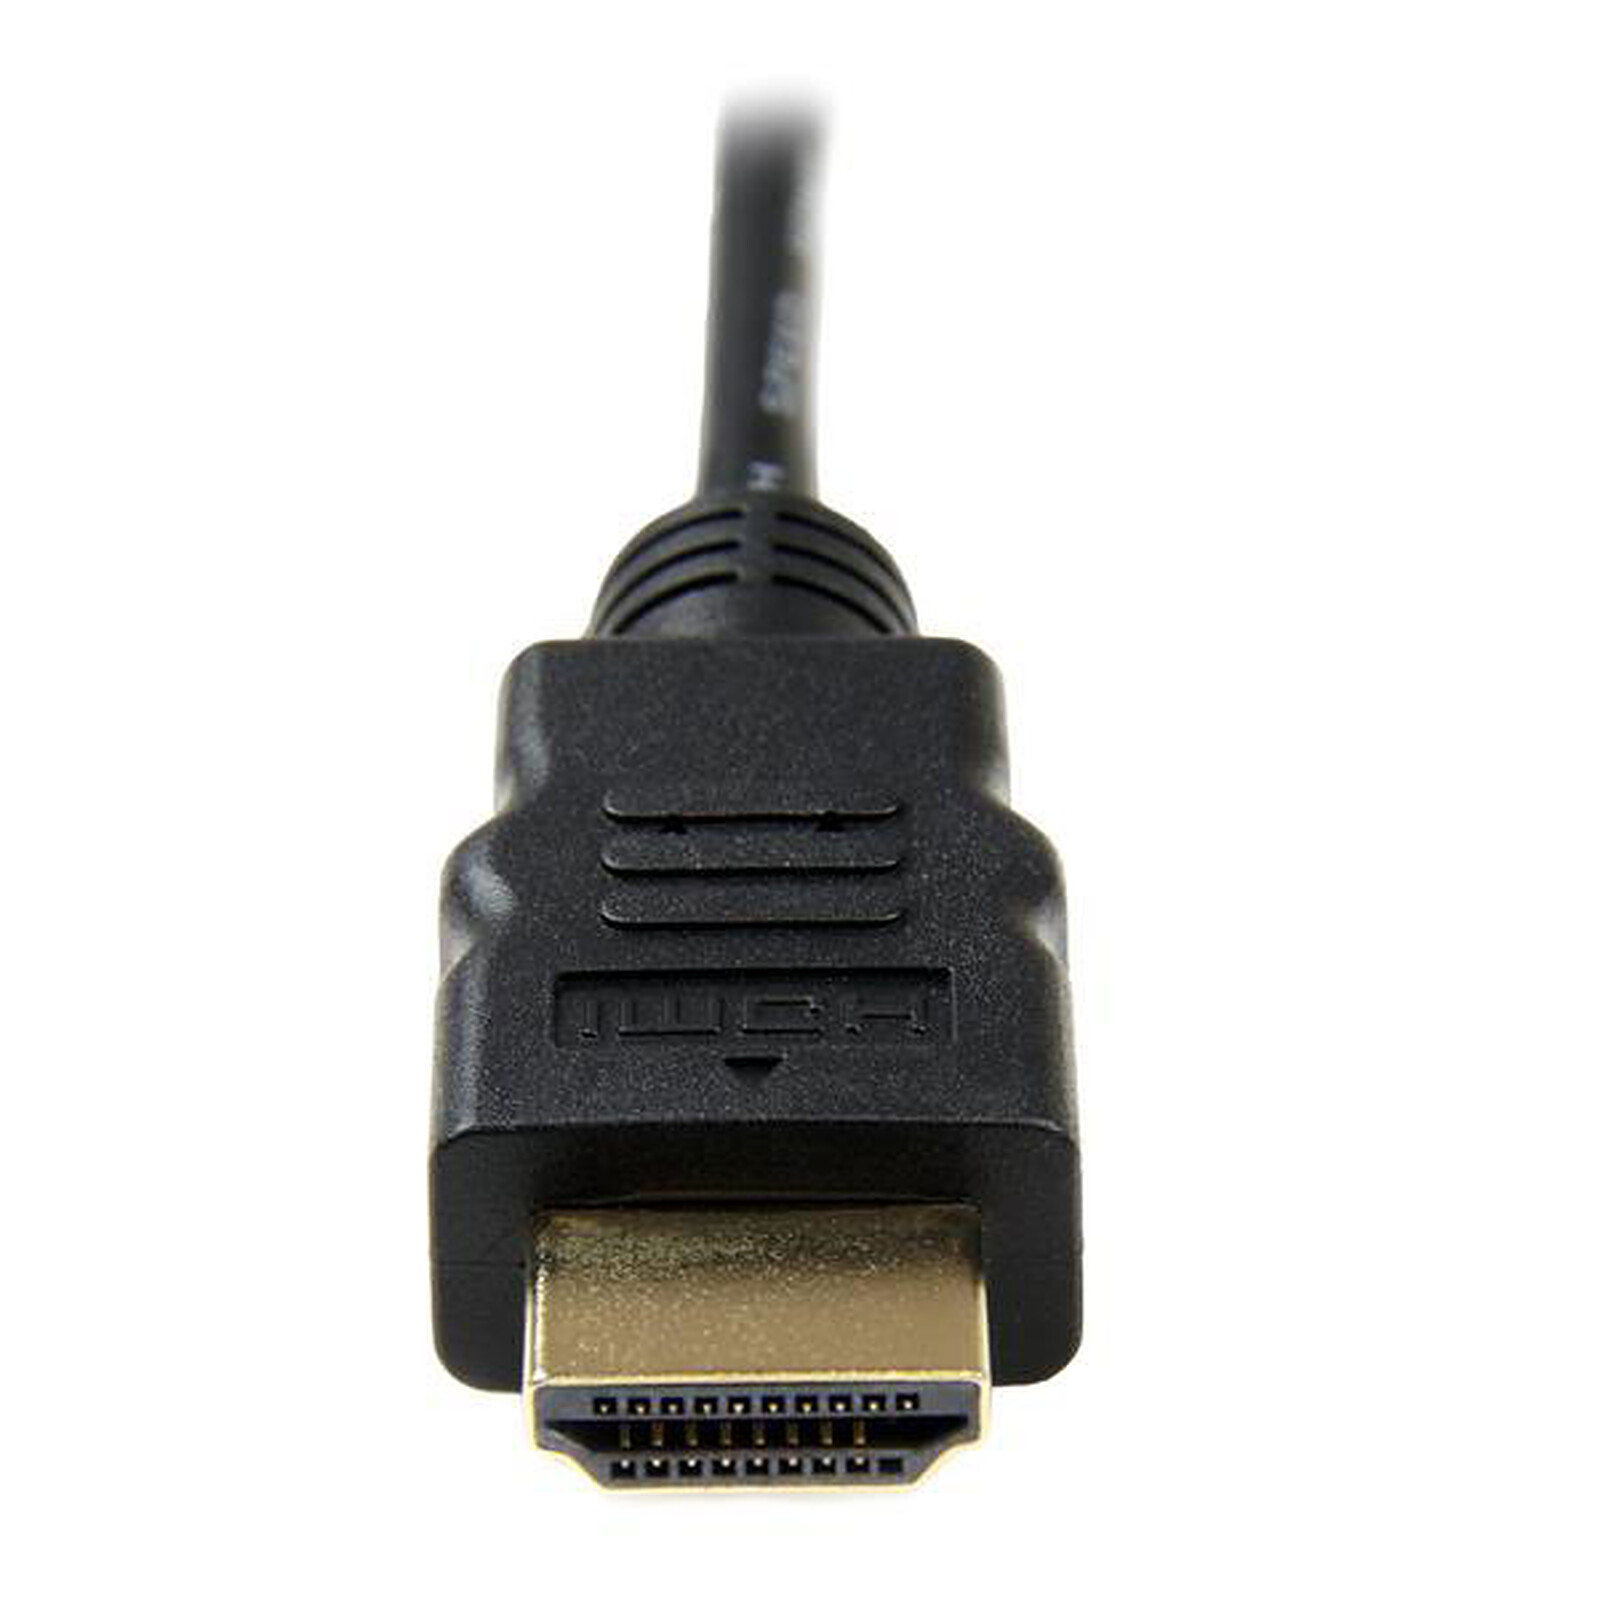 StarTech.com Adaptateur mini HDMI vers HDMI 1.4 4K 30Hz - F/M - Connecteurs  plaqués or - Noir - HDMI - Garantie 3 ans LDLC